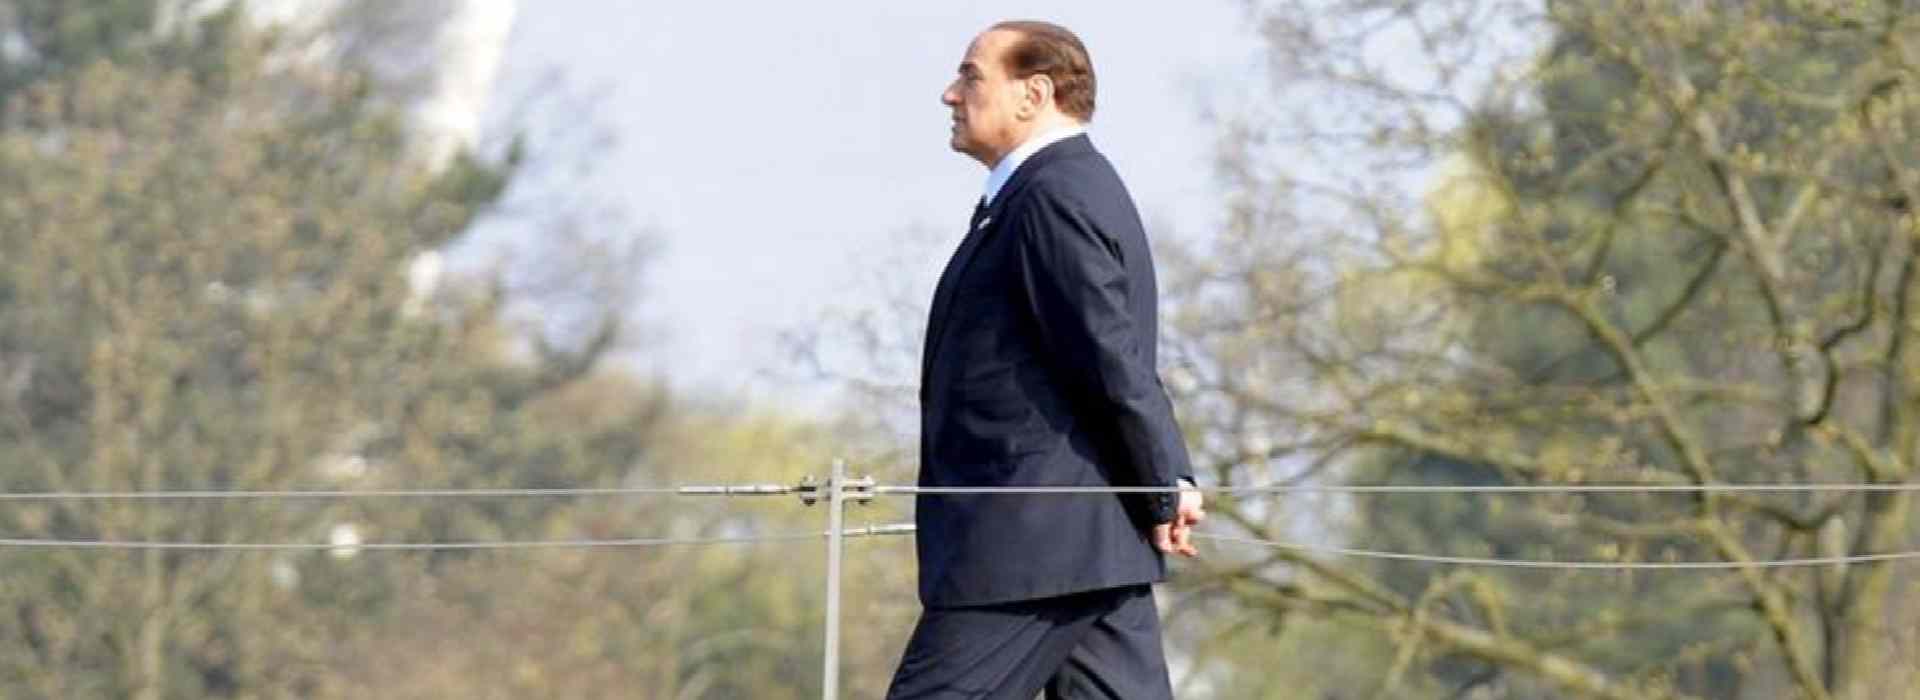 Berlusconi, i 36 processi e Letta che chiede la riforma della giustizia. Arriva la svolta